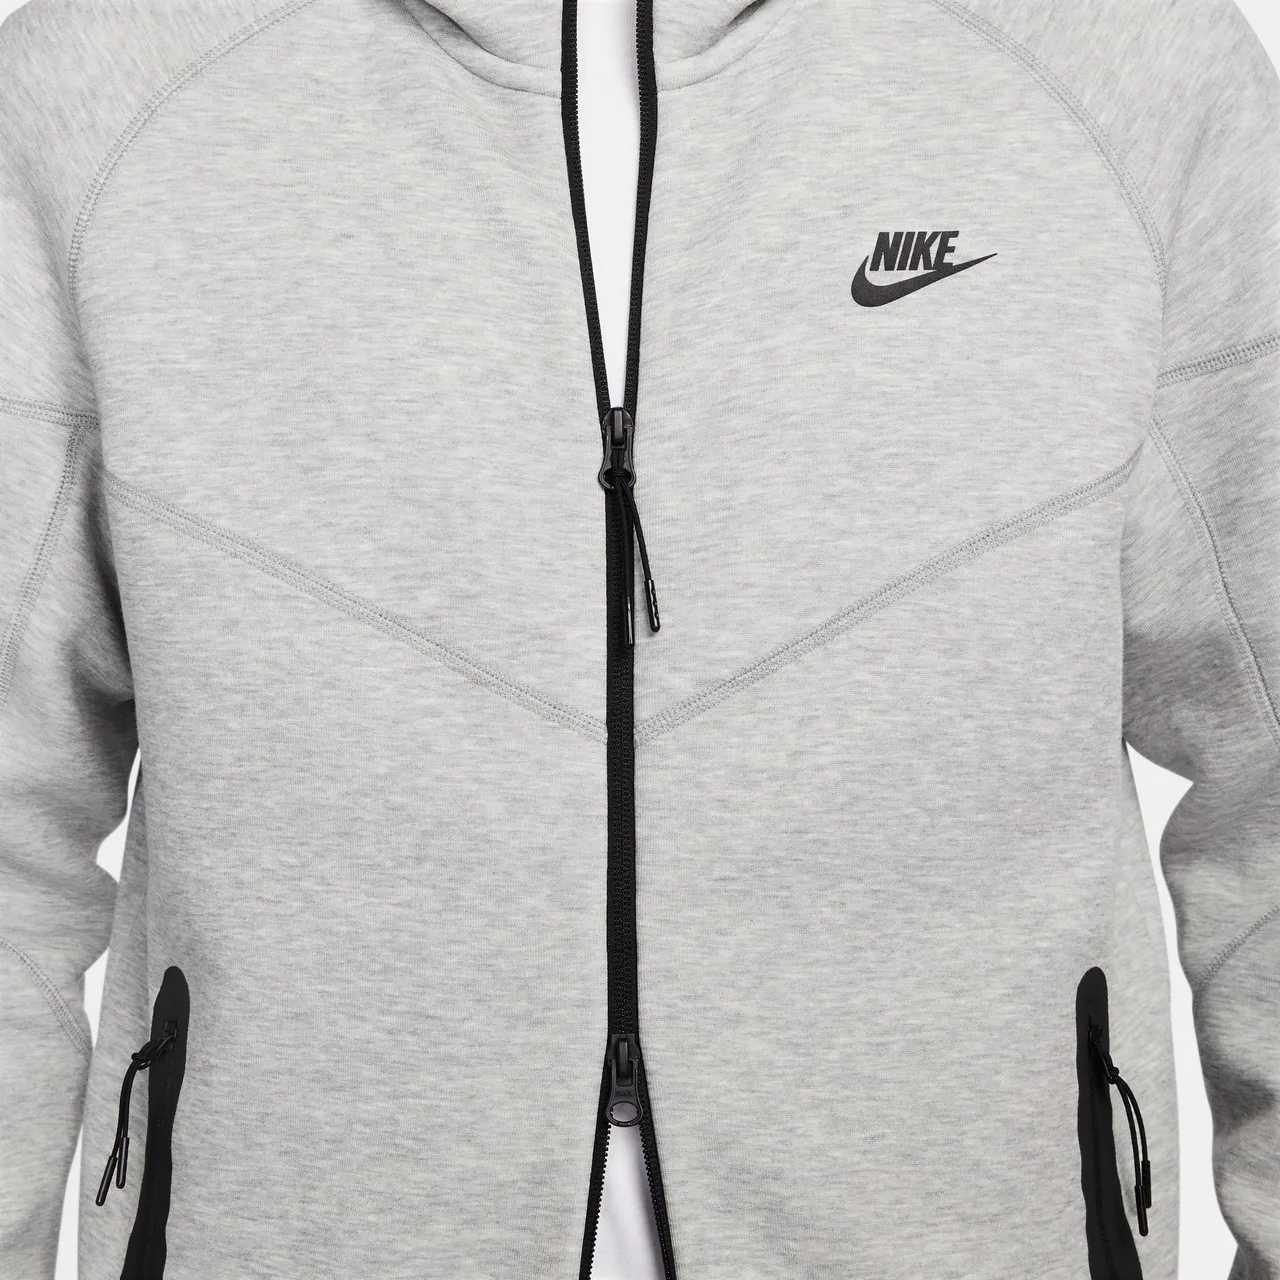 Nike Sportswear Tech Fleece Windrunner Men's Full-Zip Hoodie - Grey - Cotton